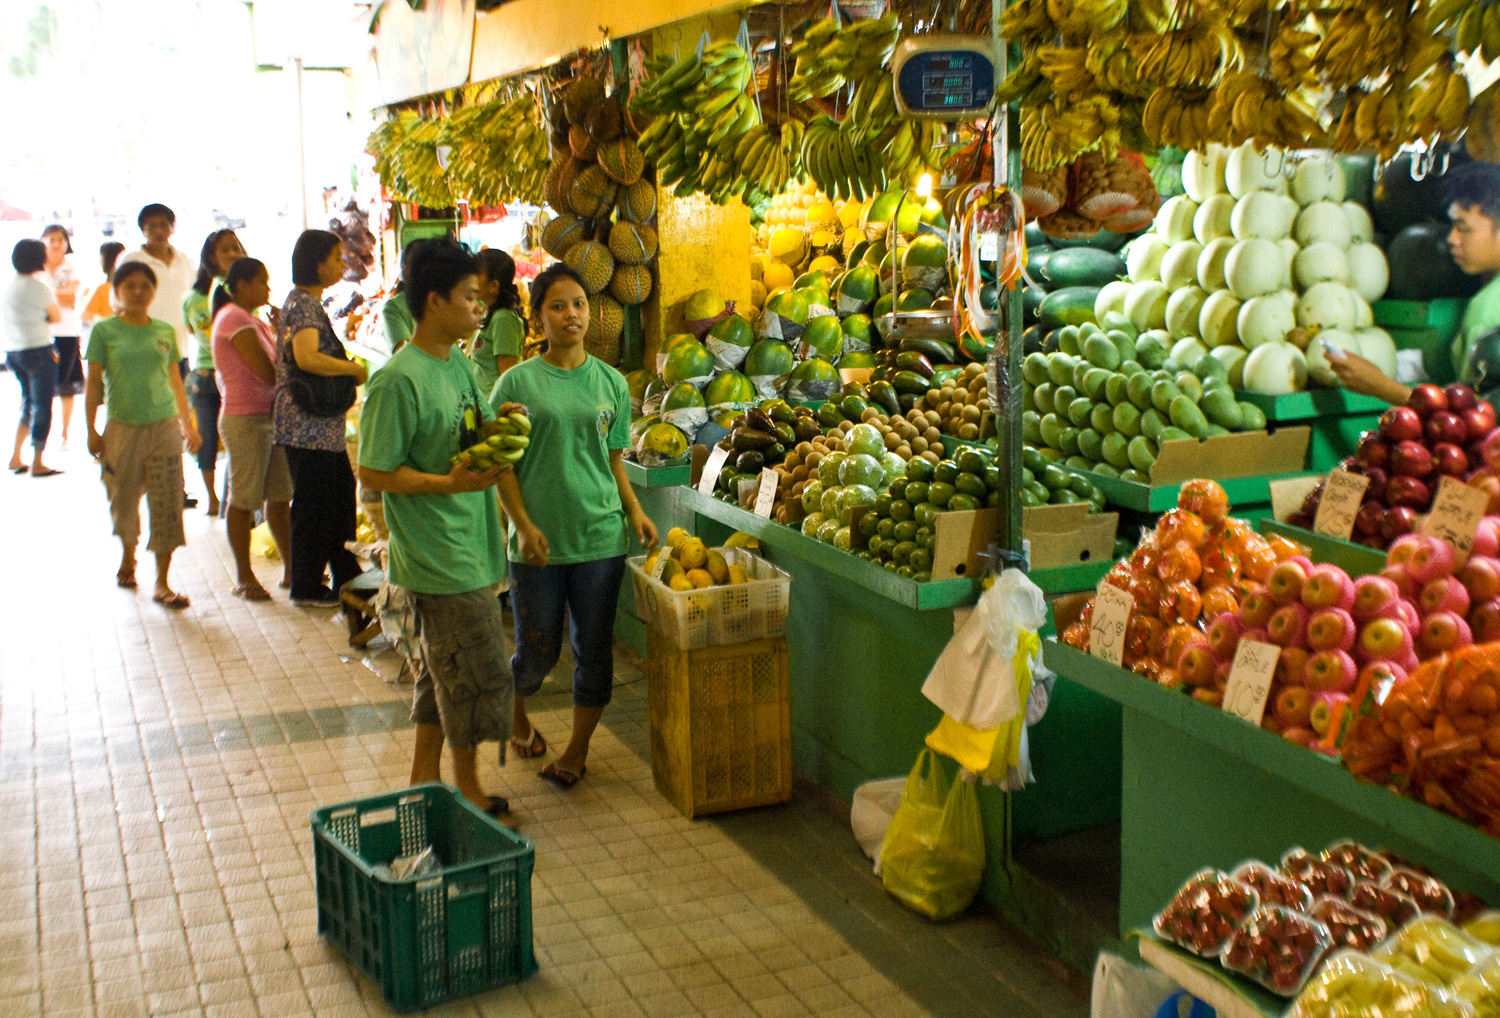 На рынке в Маниле. На заднем плане висит дуриан - страшная гадость.